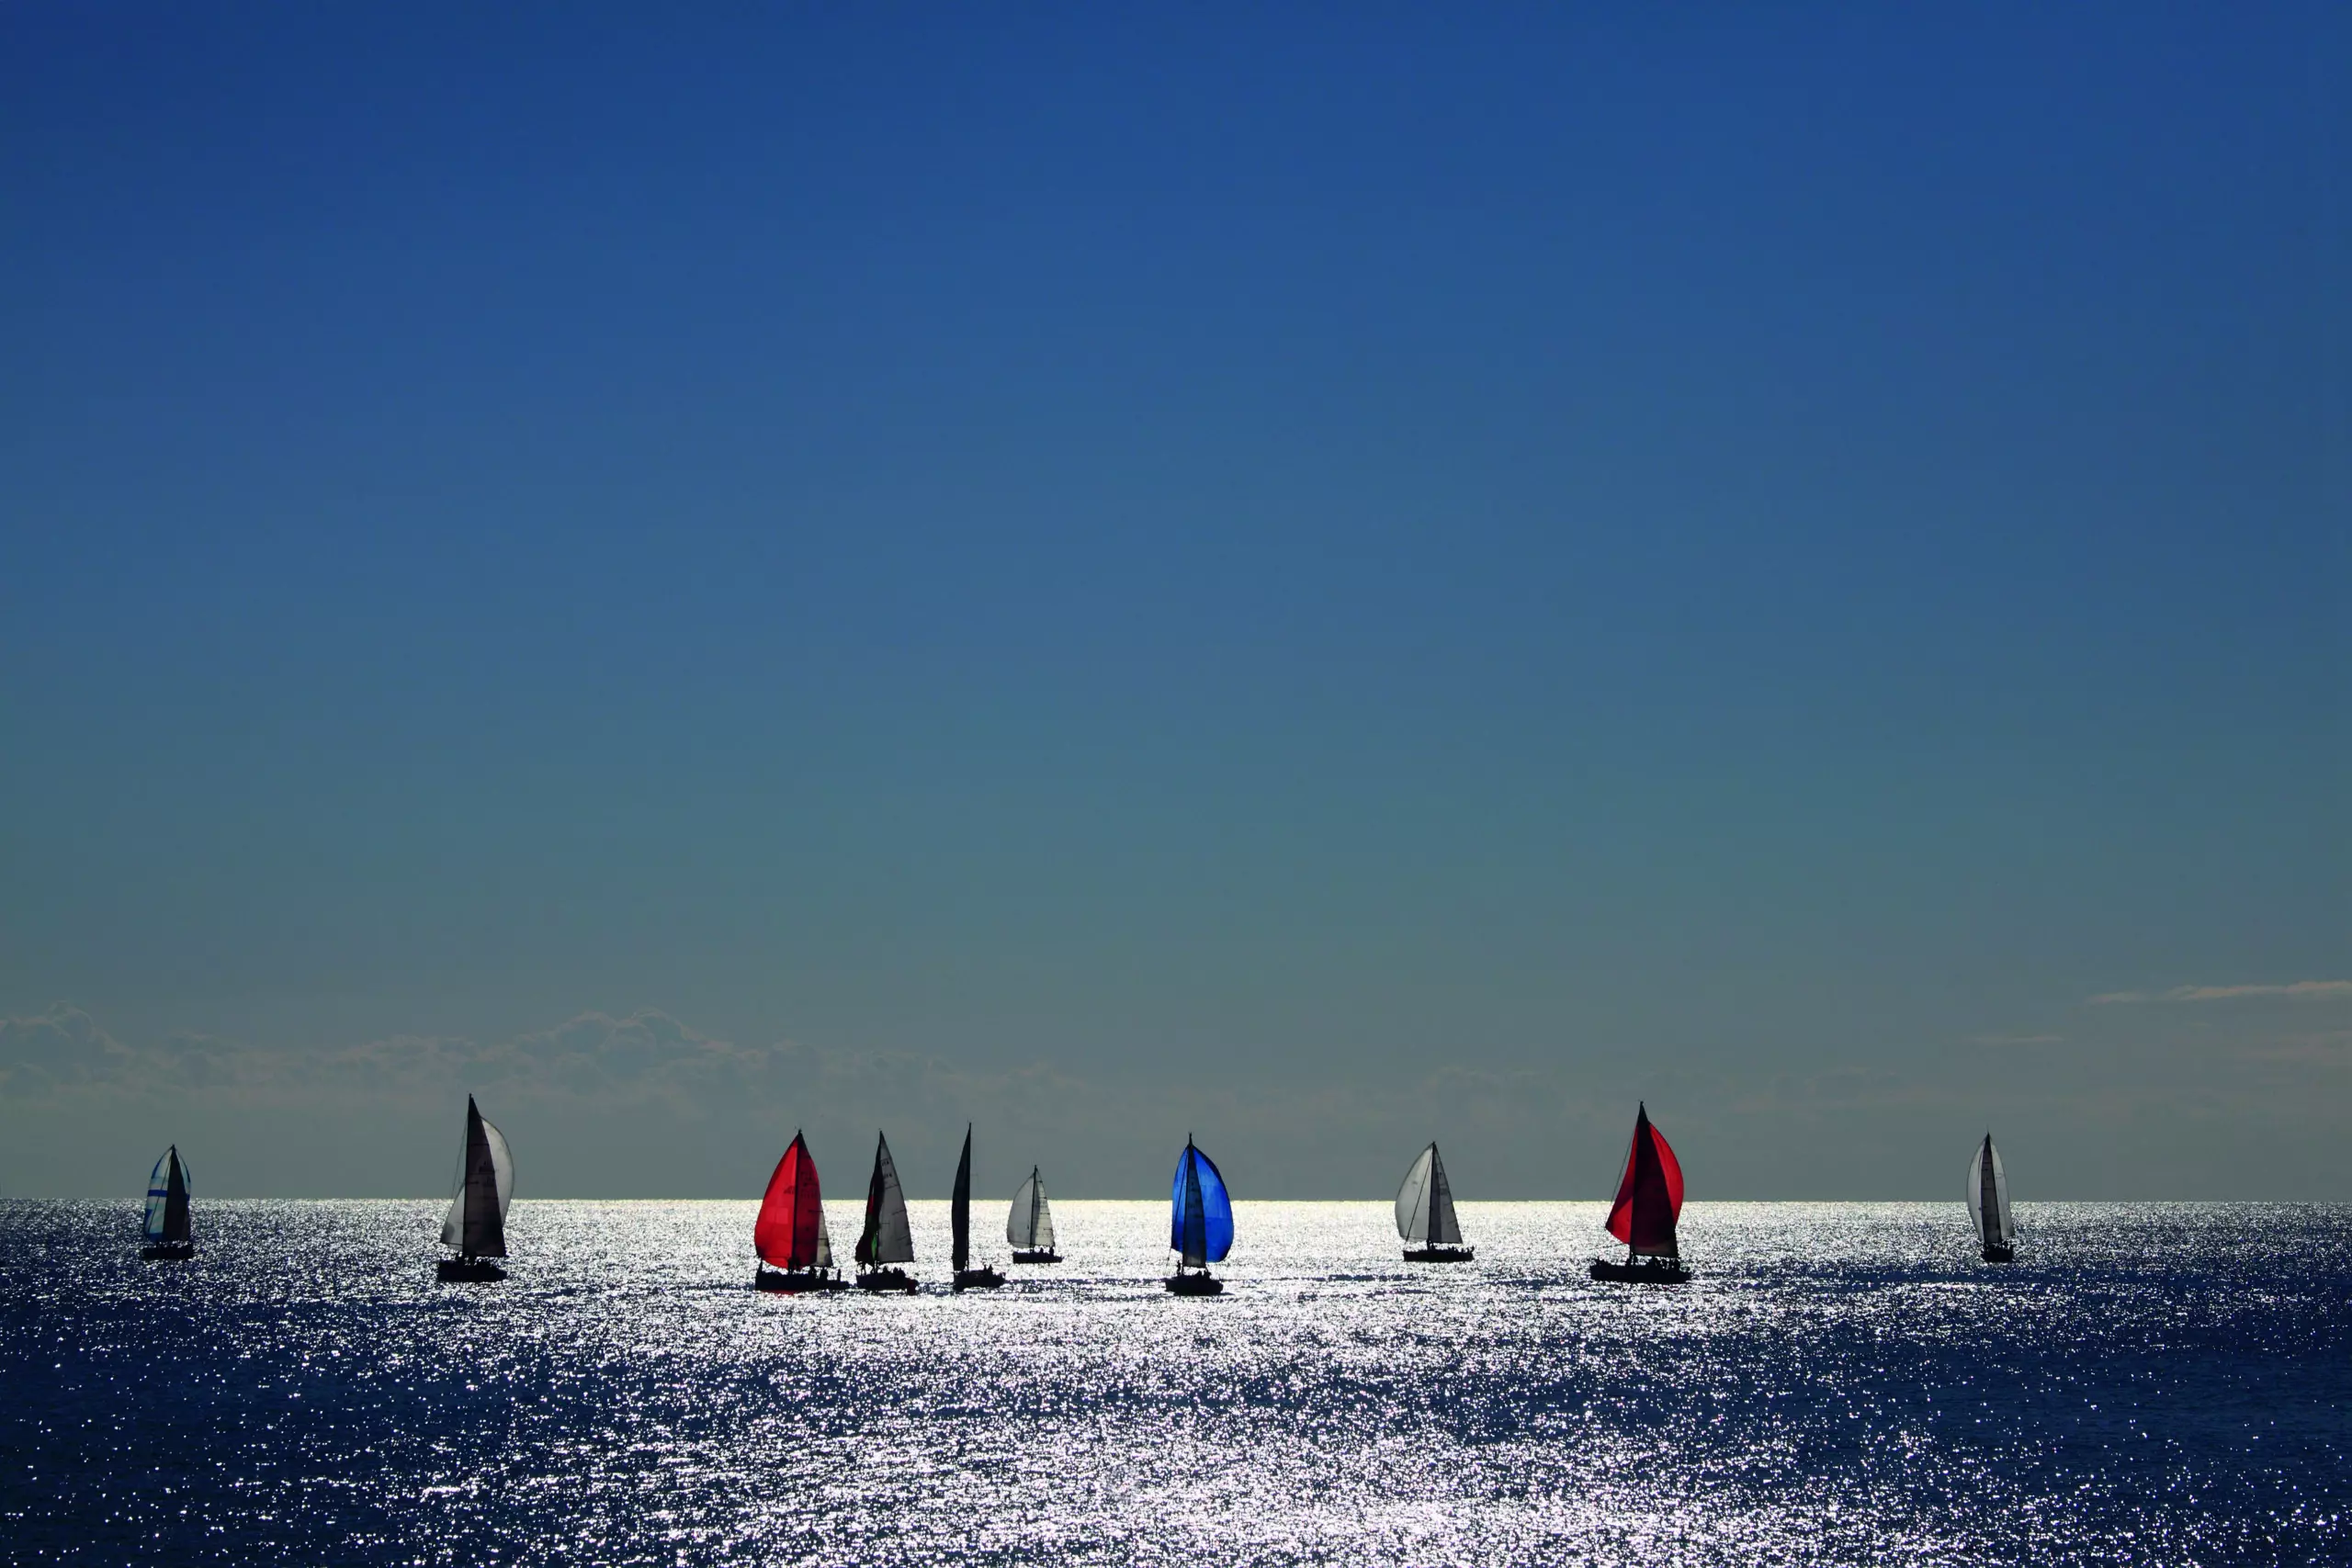 Wandbild (5296) Sailing by Davide Erbetta, HUBER IMAGES präsentiert: Aktion-Bewegung,Wasser,Natur,Landschaften,Sommer,Gewässer,Wassersport,Meere,Wasserspiegelungen